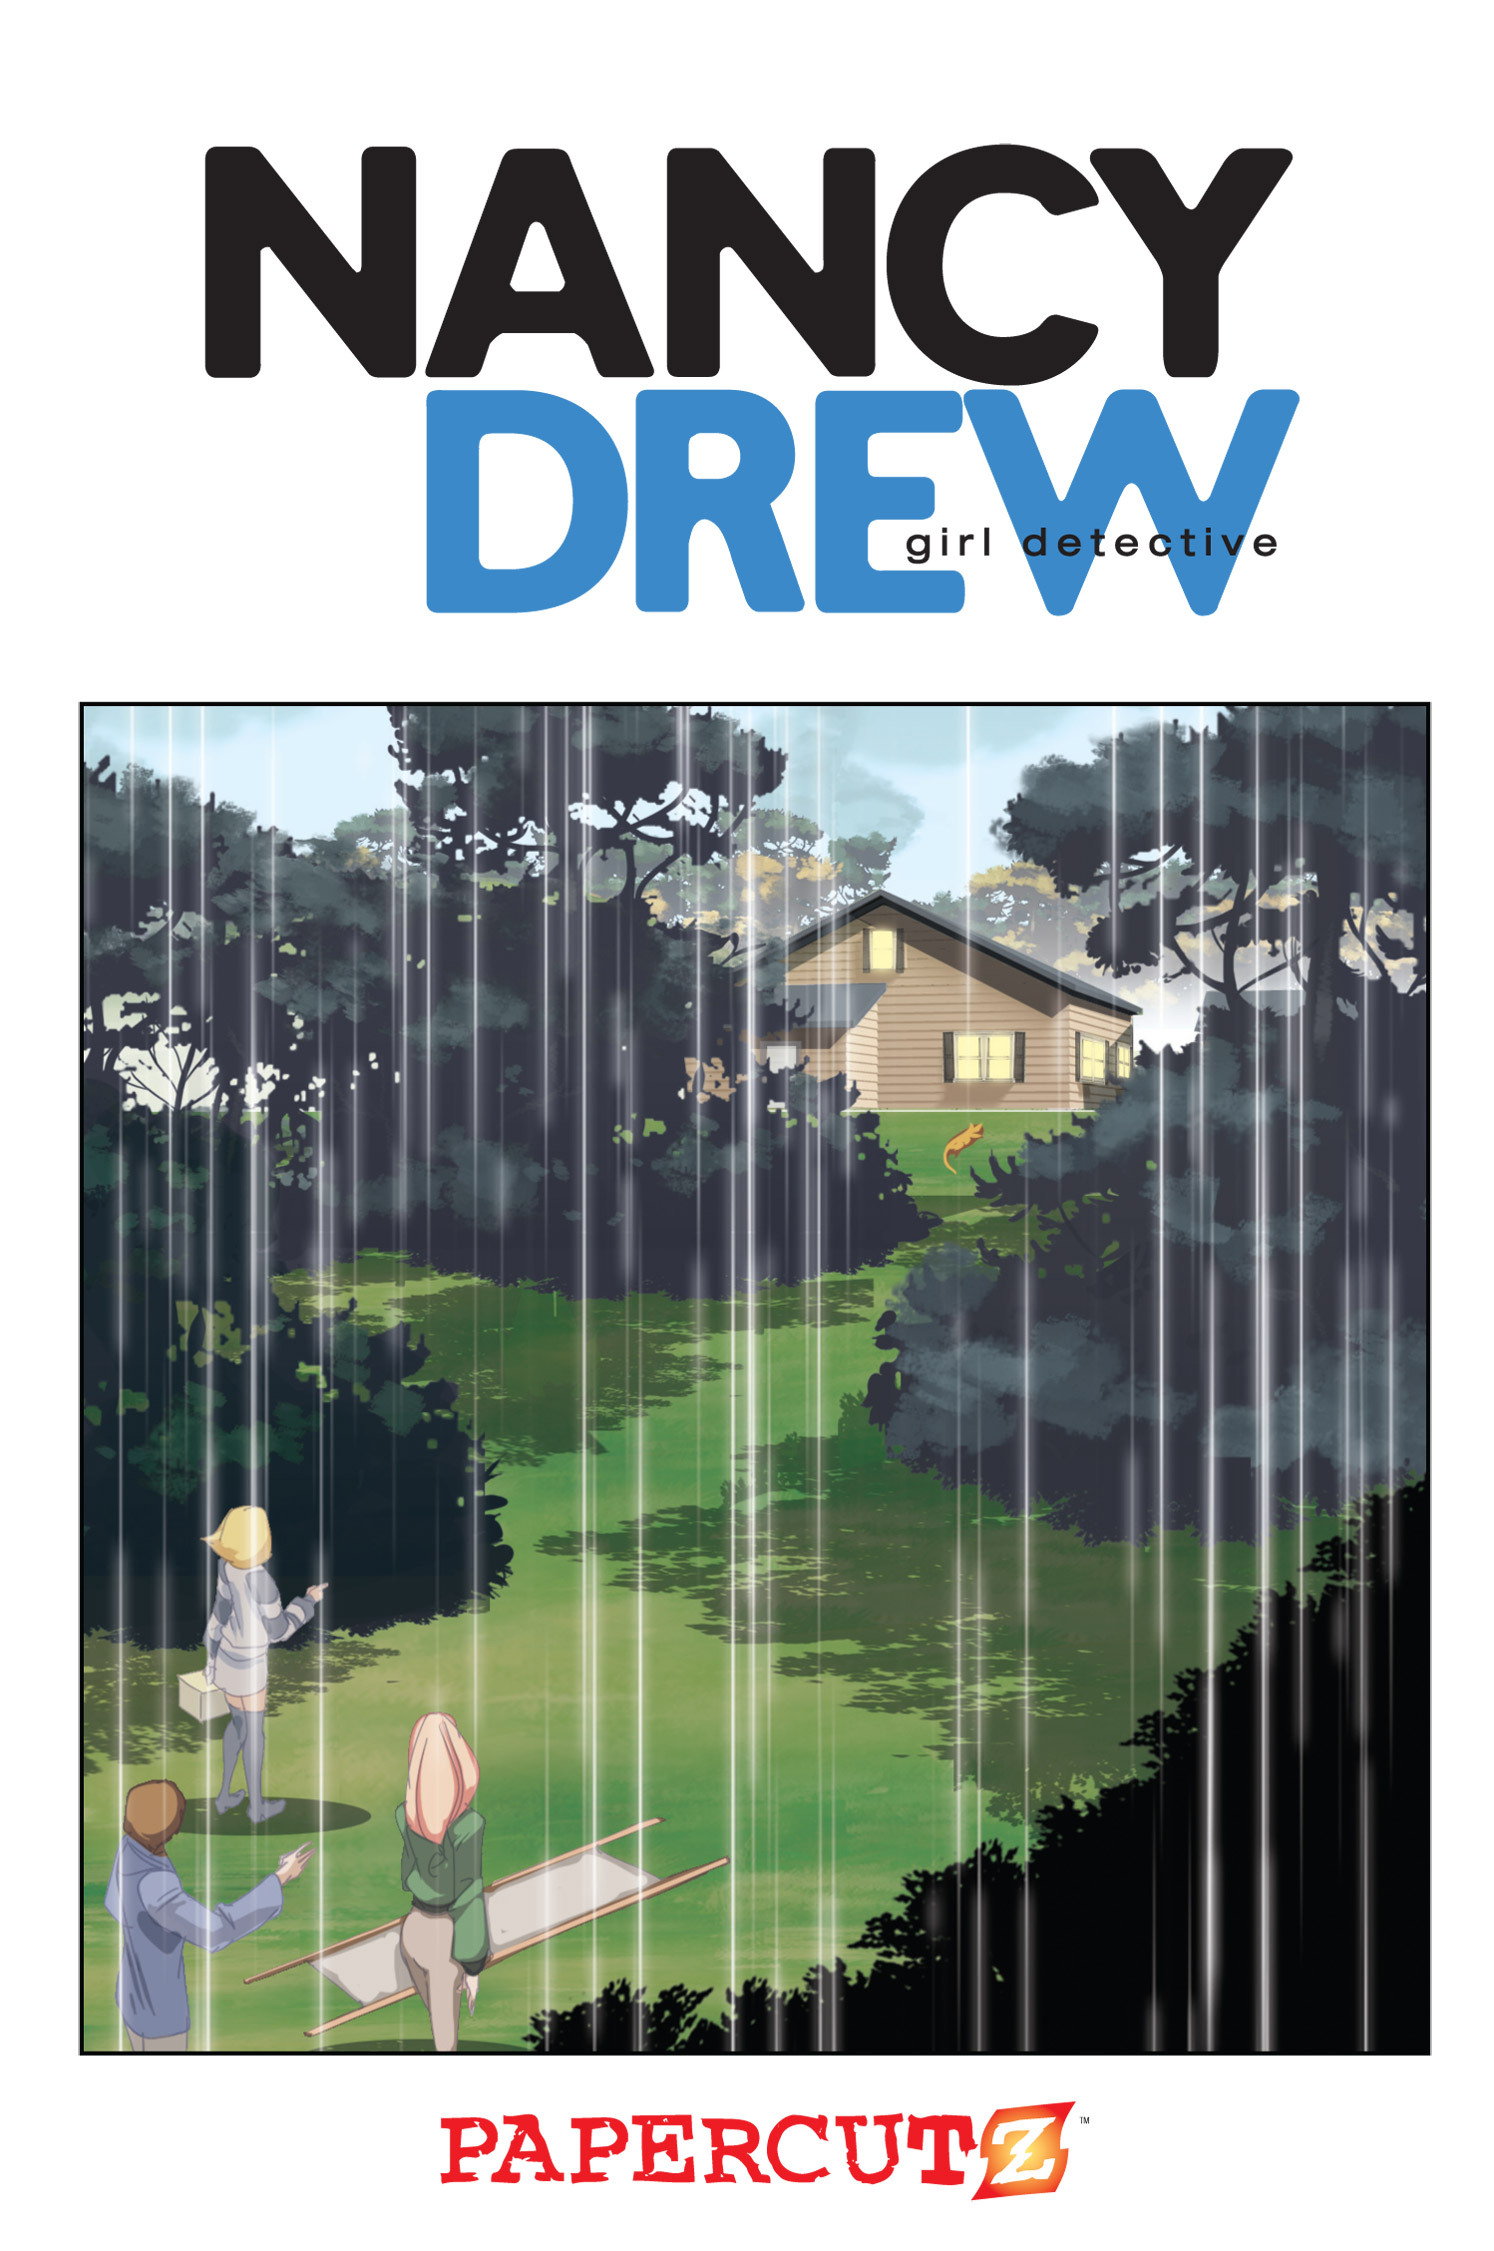 Read online Nancy Drew comic -  Issue #15 - 2